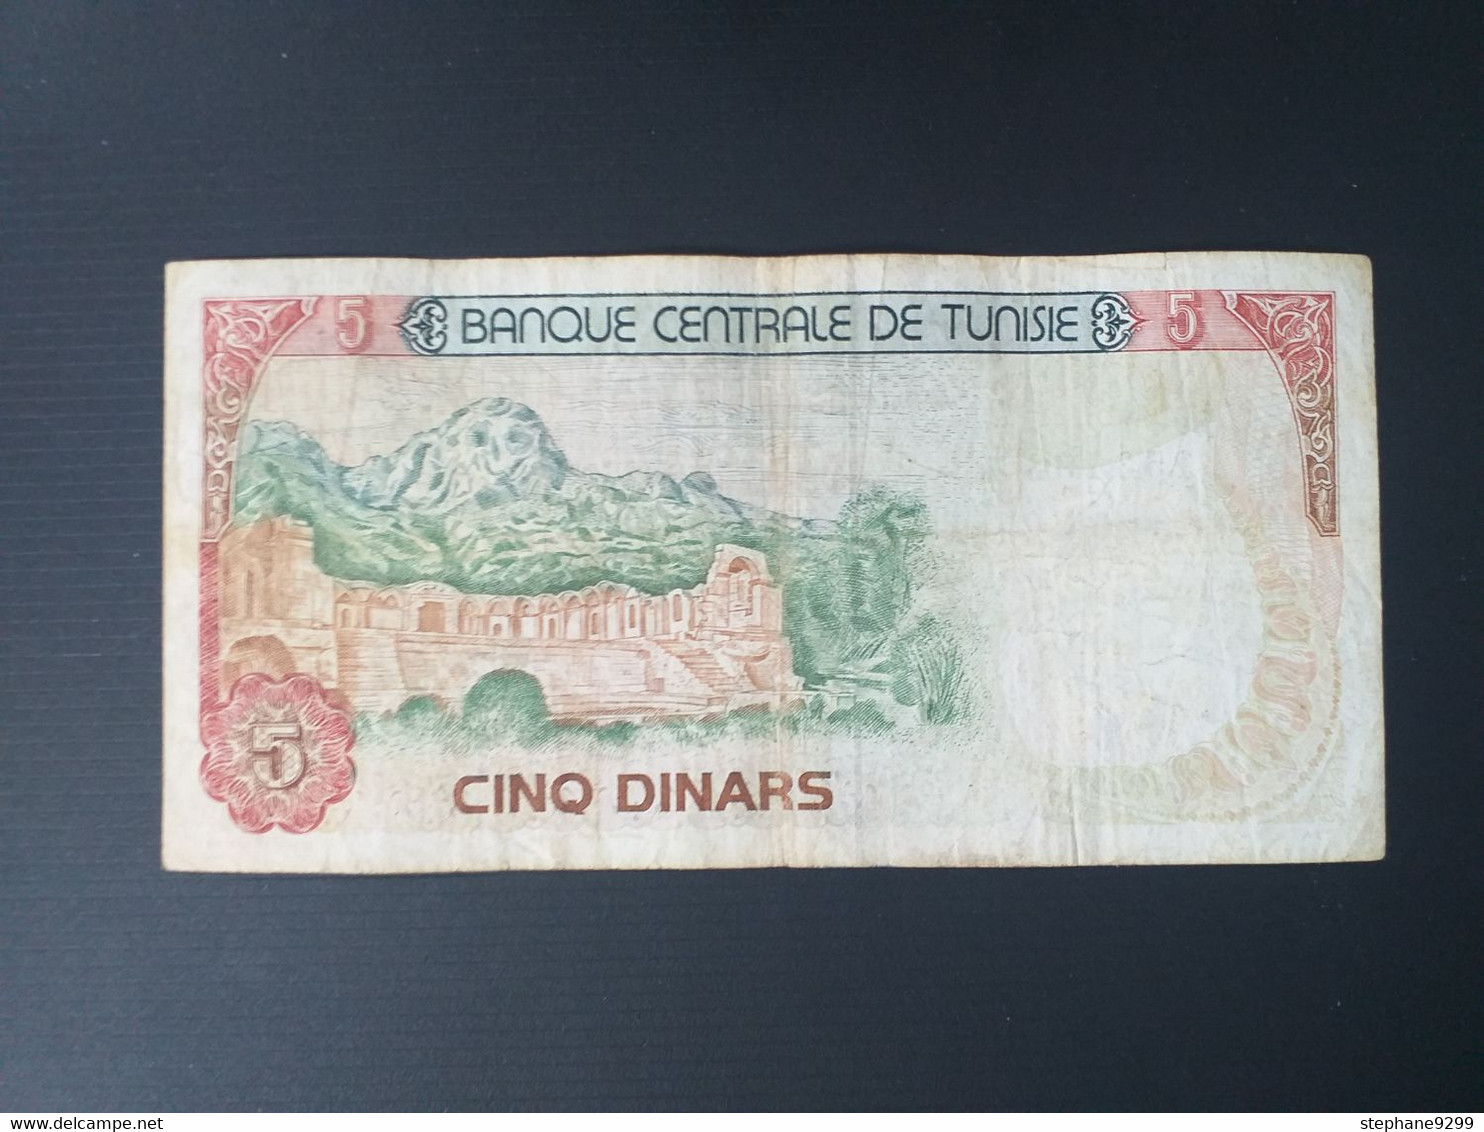 TUNISIE 5 DINARS 1980 - Tunesien